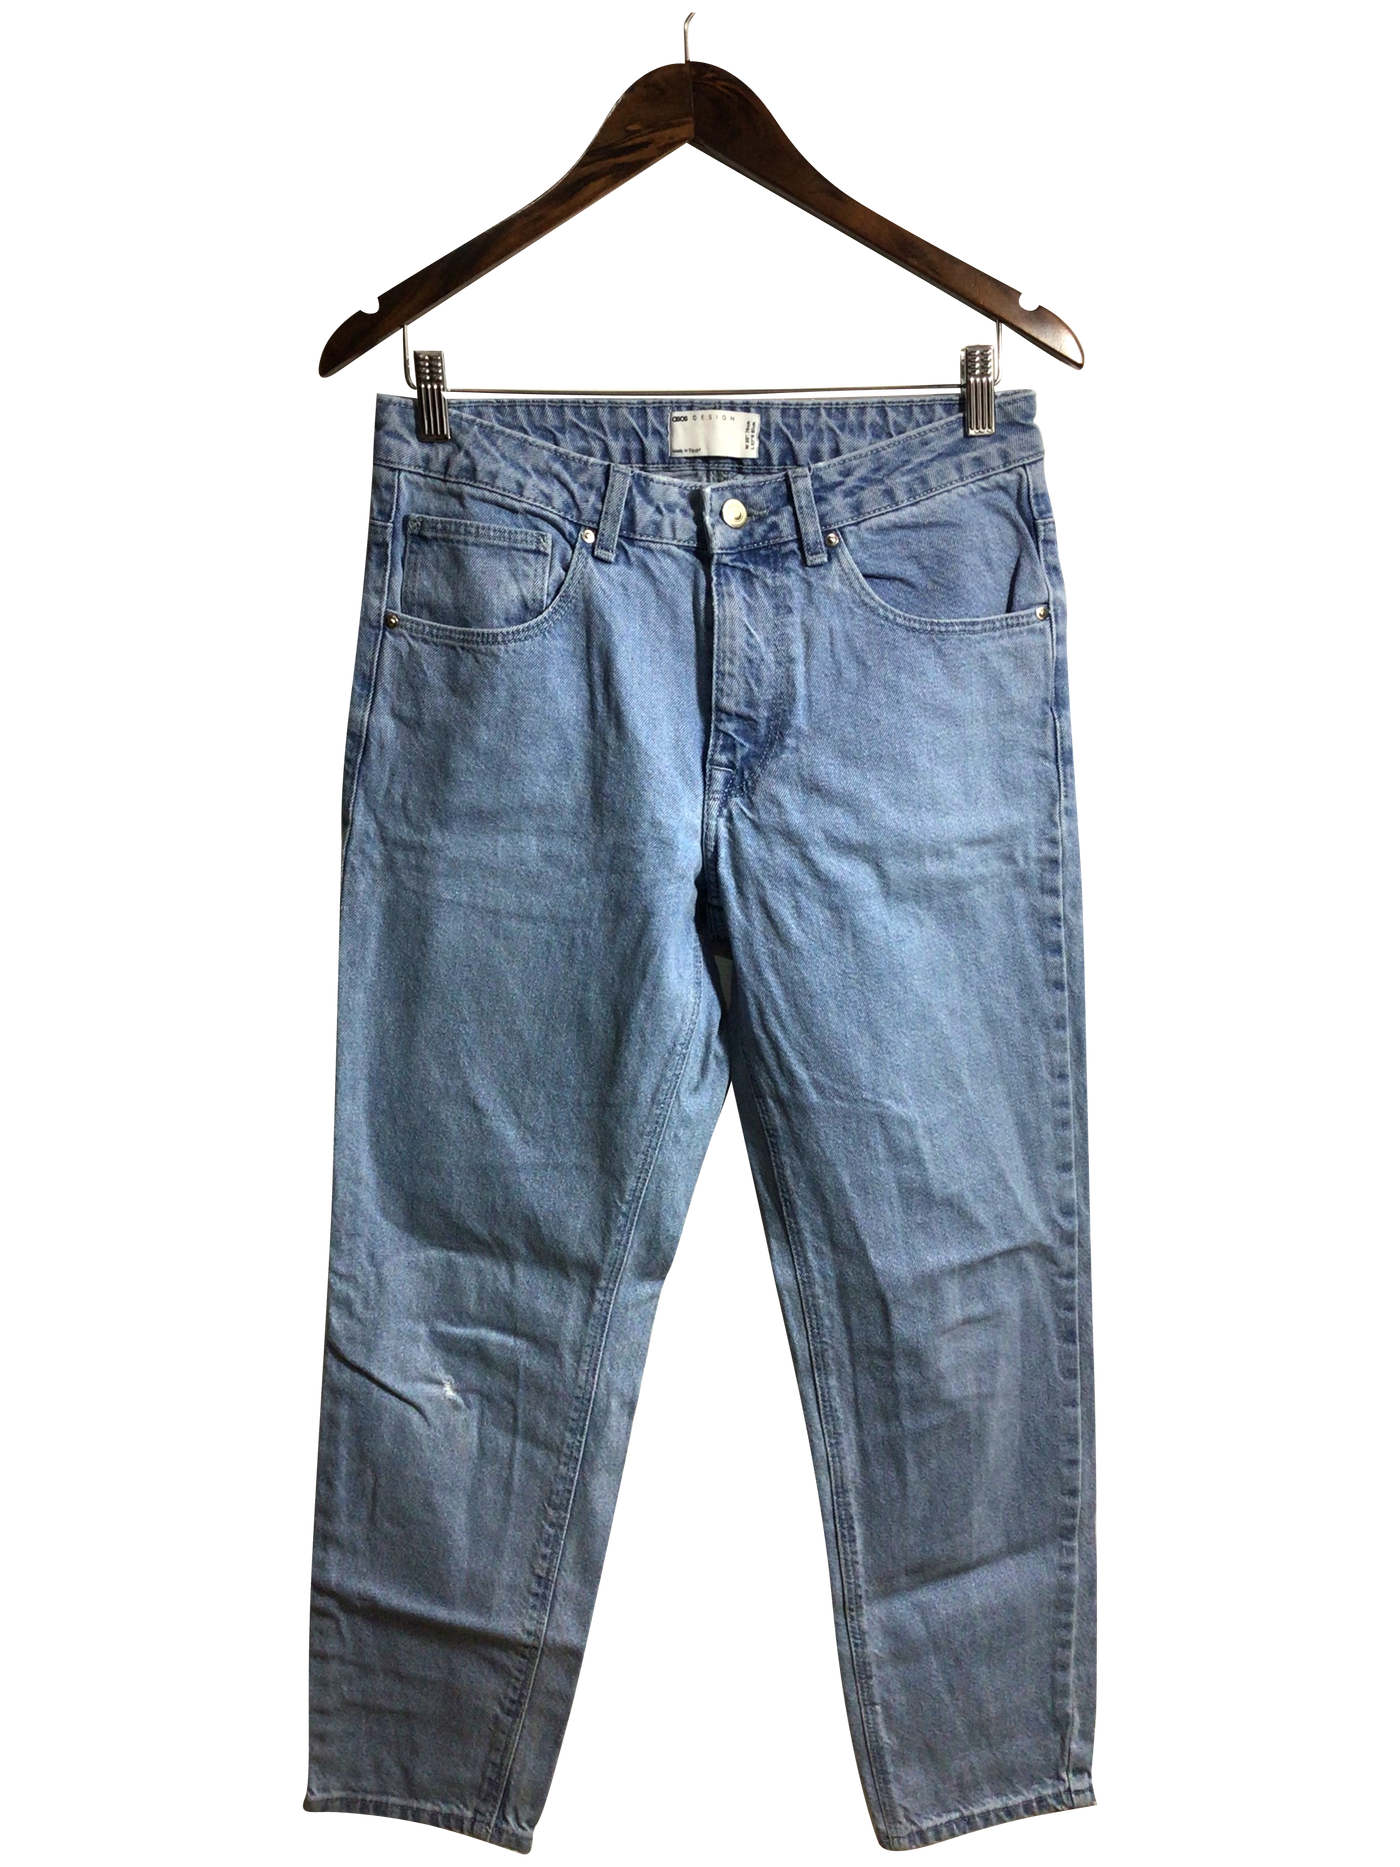 ASOS Women Straight-Legged Jeans Regular fit in Blue - Size 30x32 | 13.25 $ KOOP